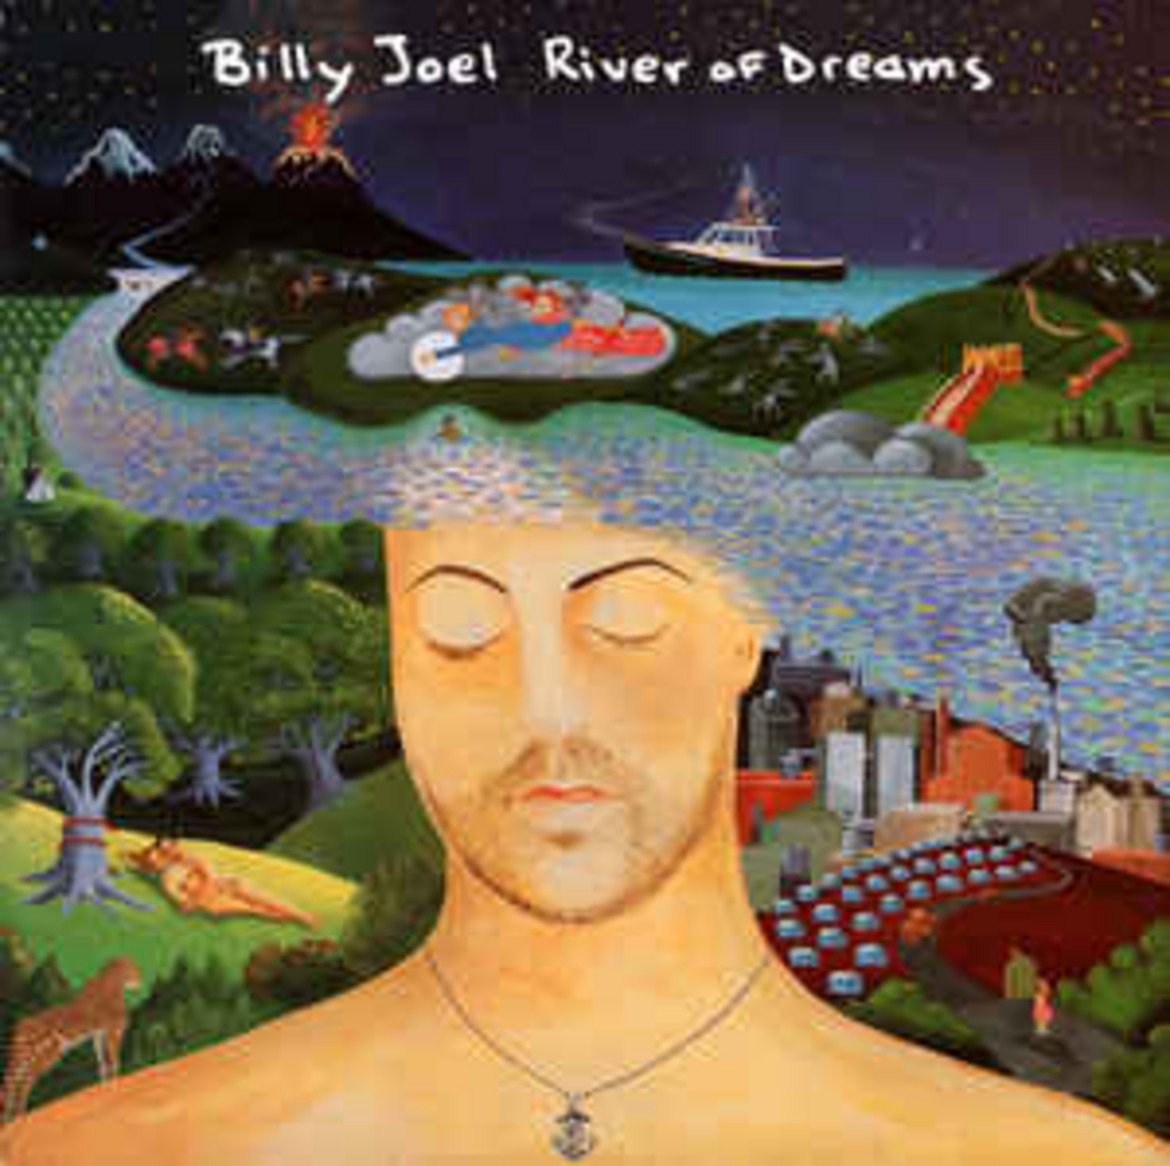  Billy Joel - River of Dreams 

Има голяма вероятност да харесвате тази мелодична песен на Били Джоел и има още по-голяма вероятност да бъркате името й. За "River of Dreams" често се смята, че името й е "In the middle of the night".